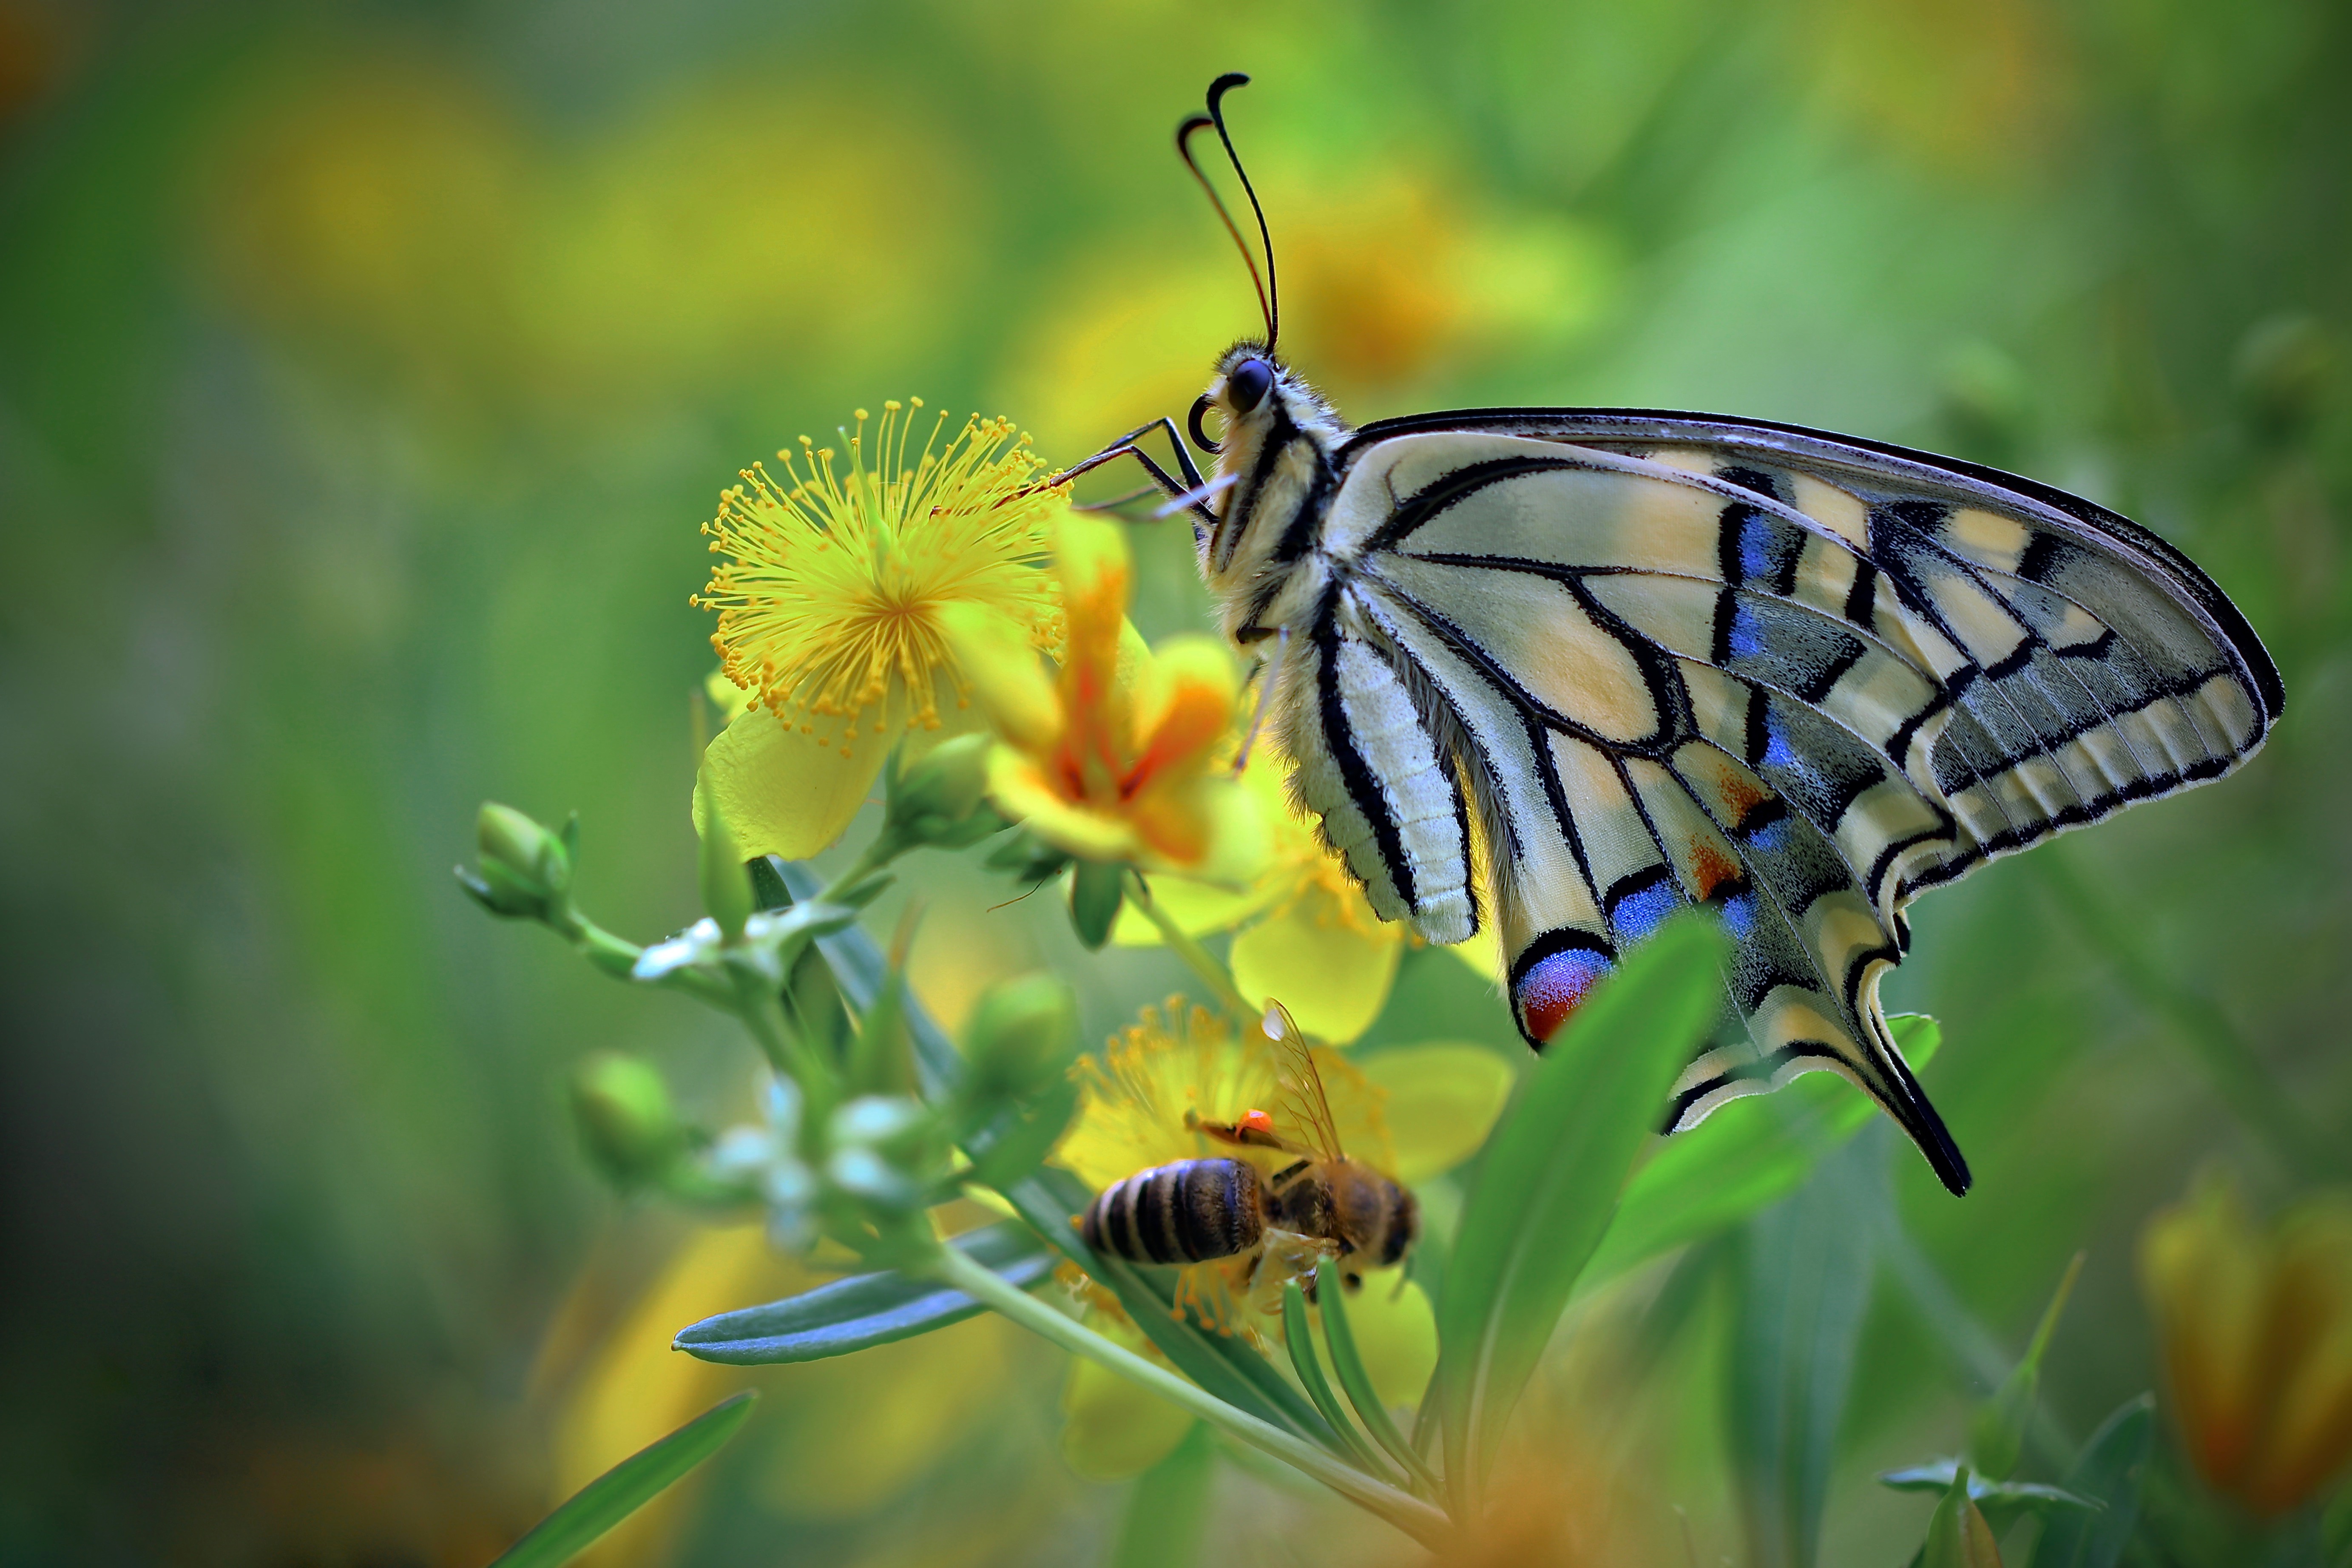 Фото насекомые бабочка макросъемка - бесплатные картинки на Fonwall